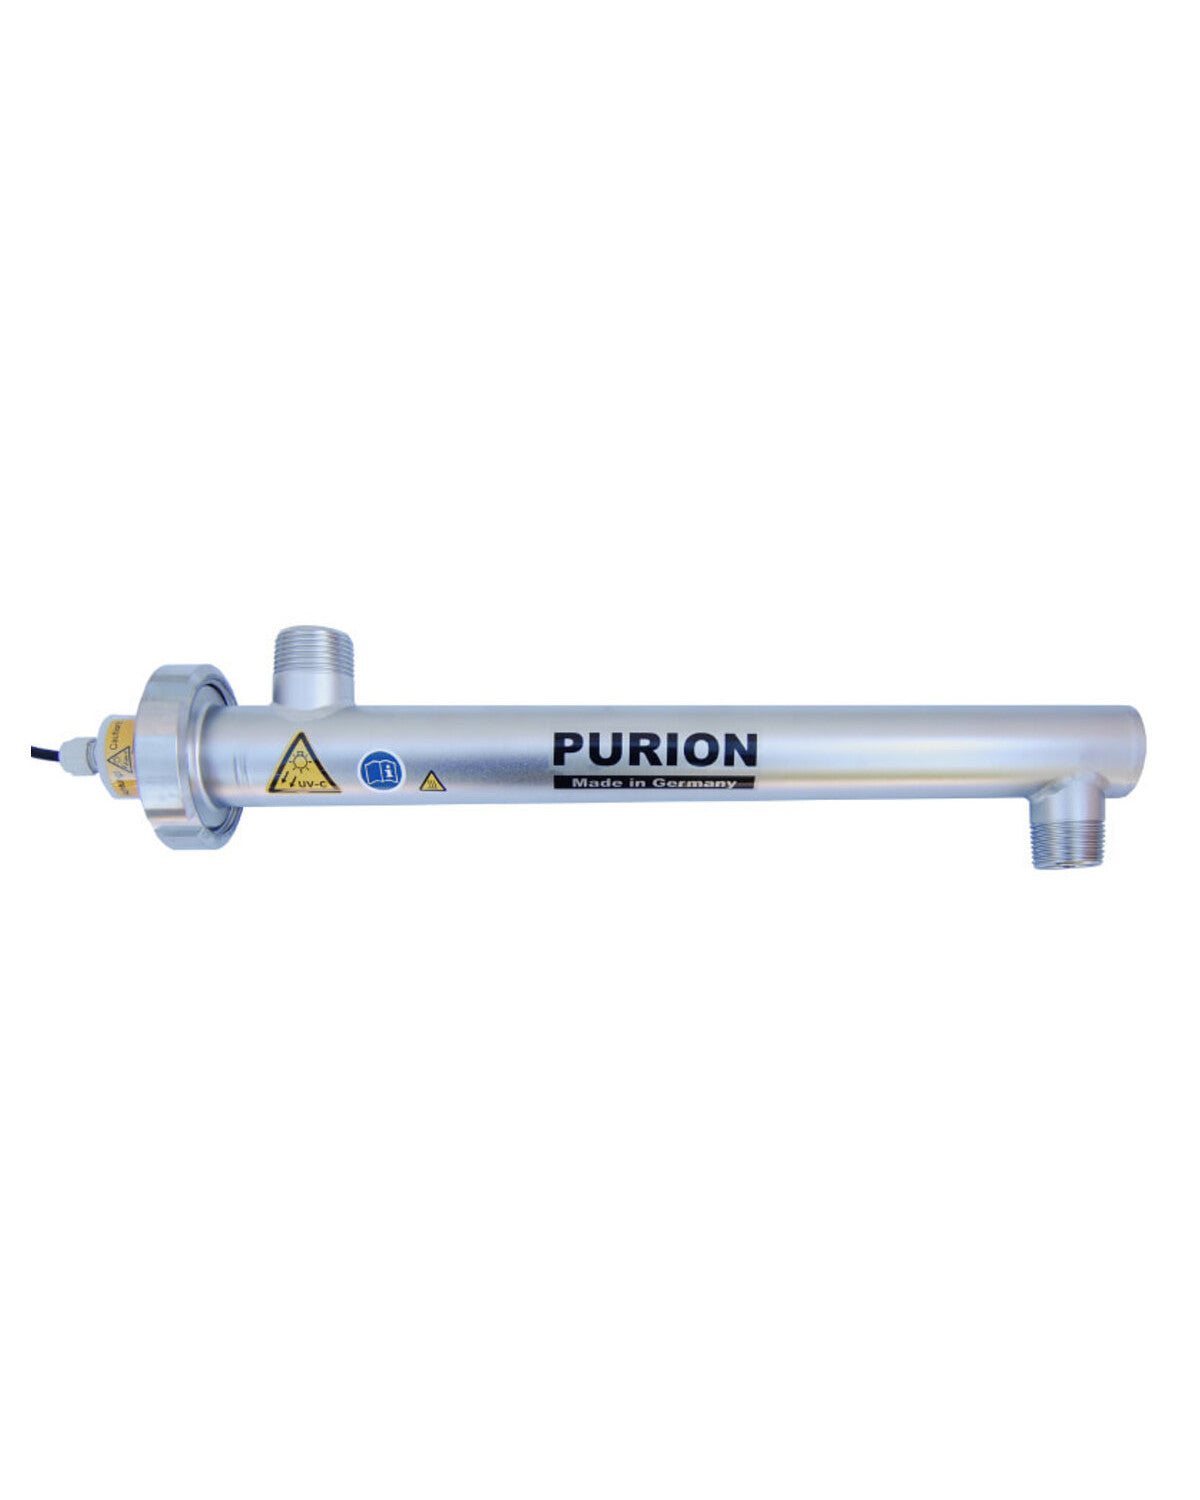 PURION 1000 12/24 V DC Basic